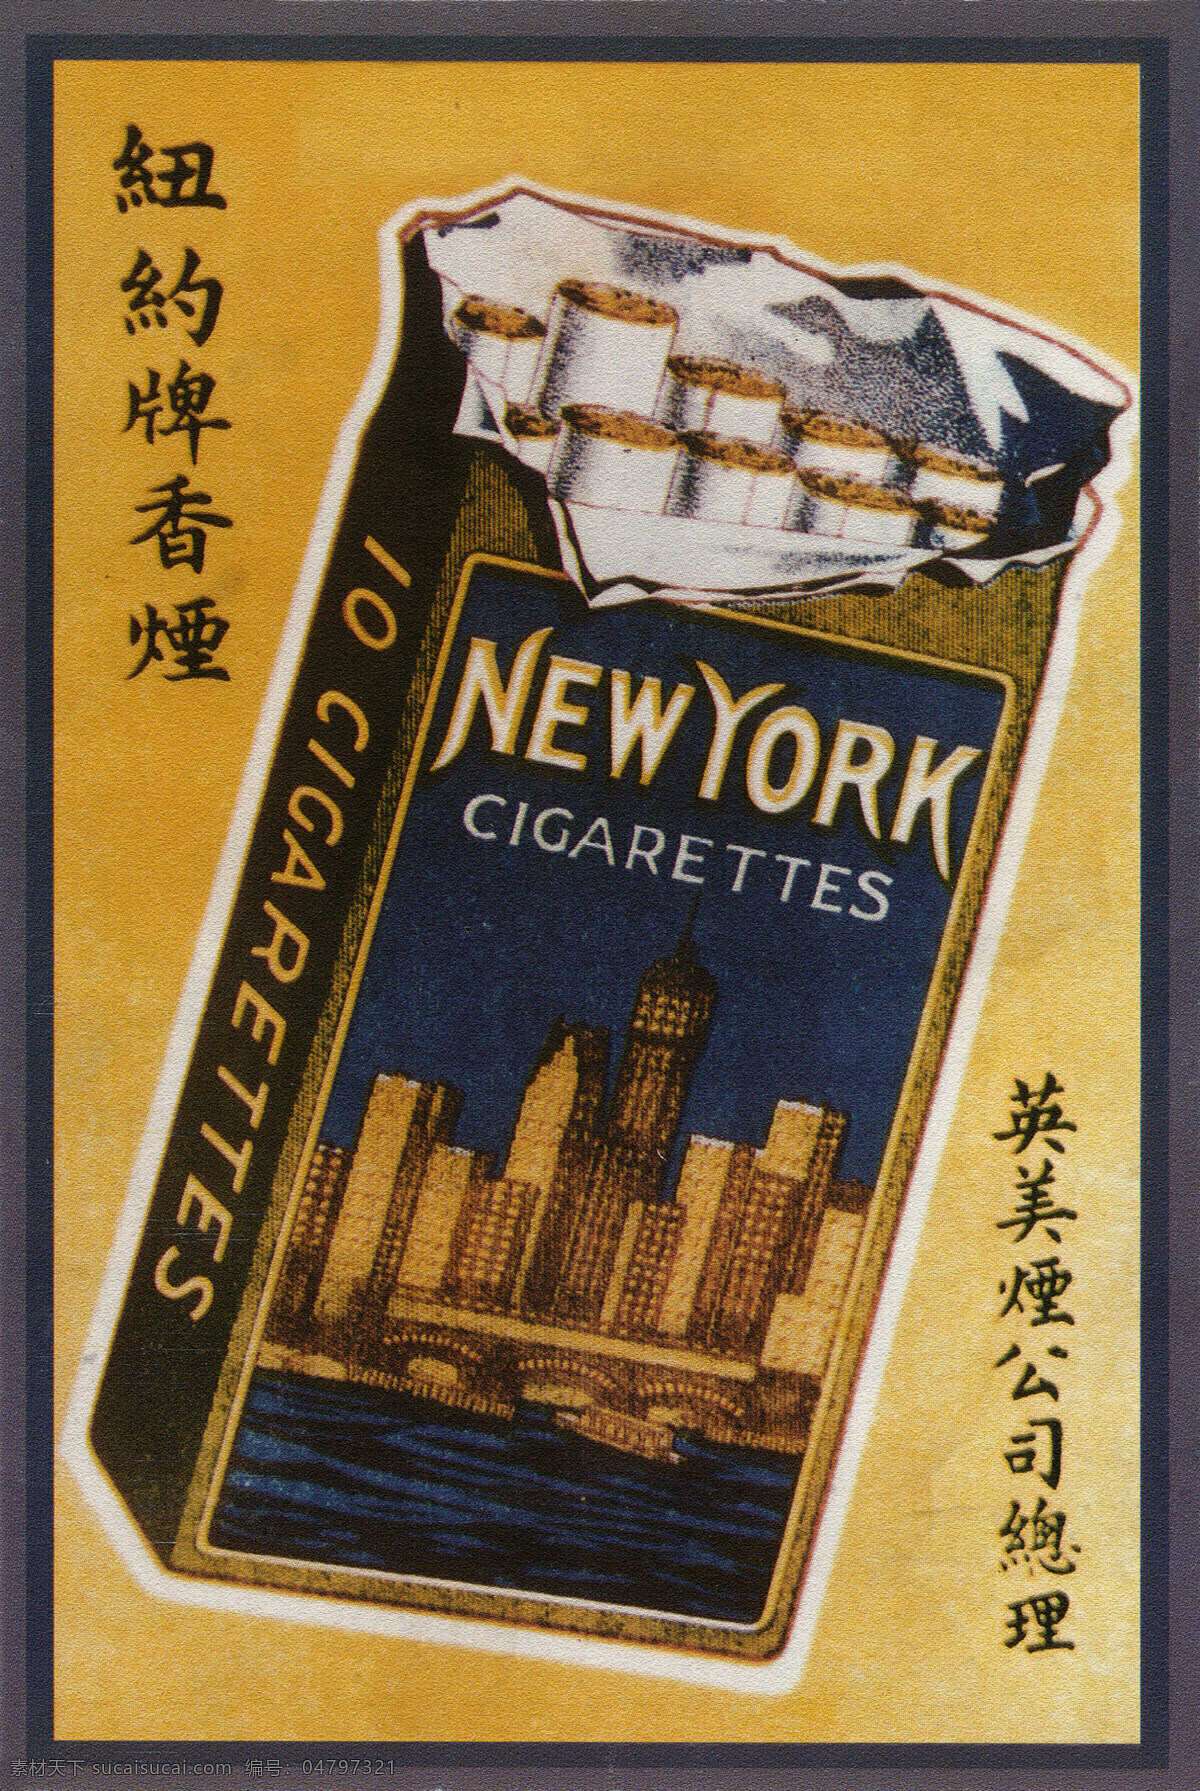 民国 烟草广告 招贴画 招贴设计 时期 老广 告 海报 老广告 旧社会 素材资料 烟标 中国 近代 其他海报设计